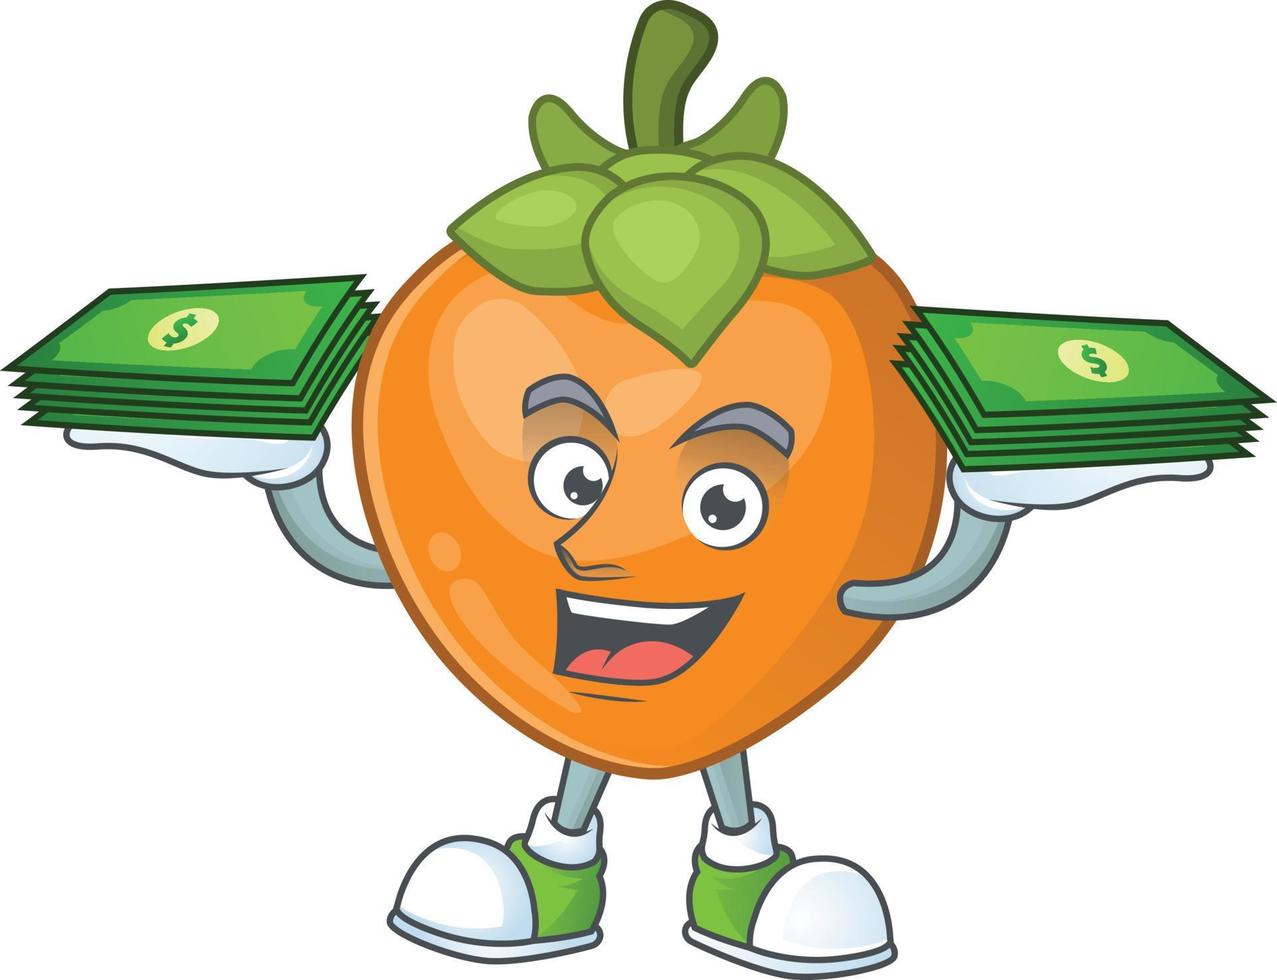 persimon frukt vektor